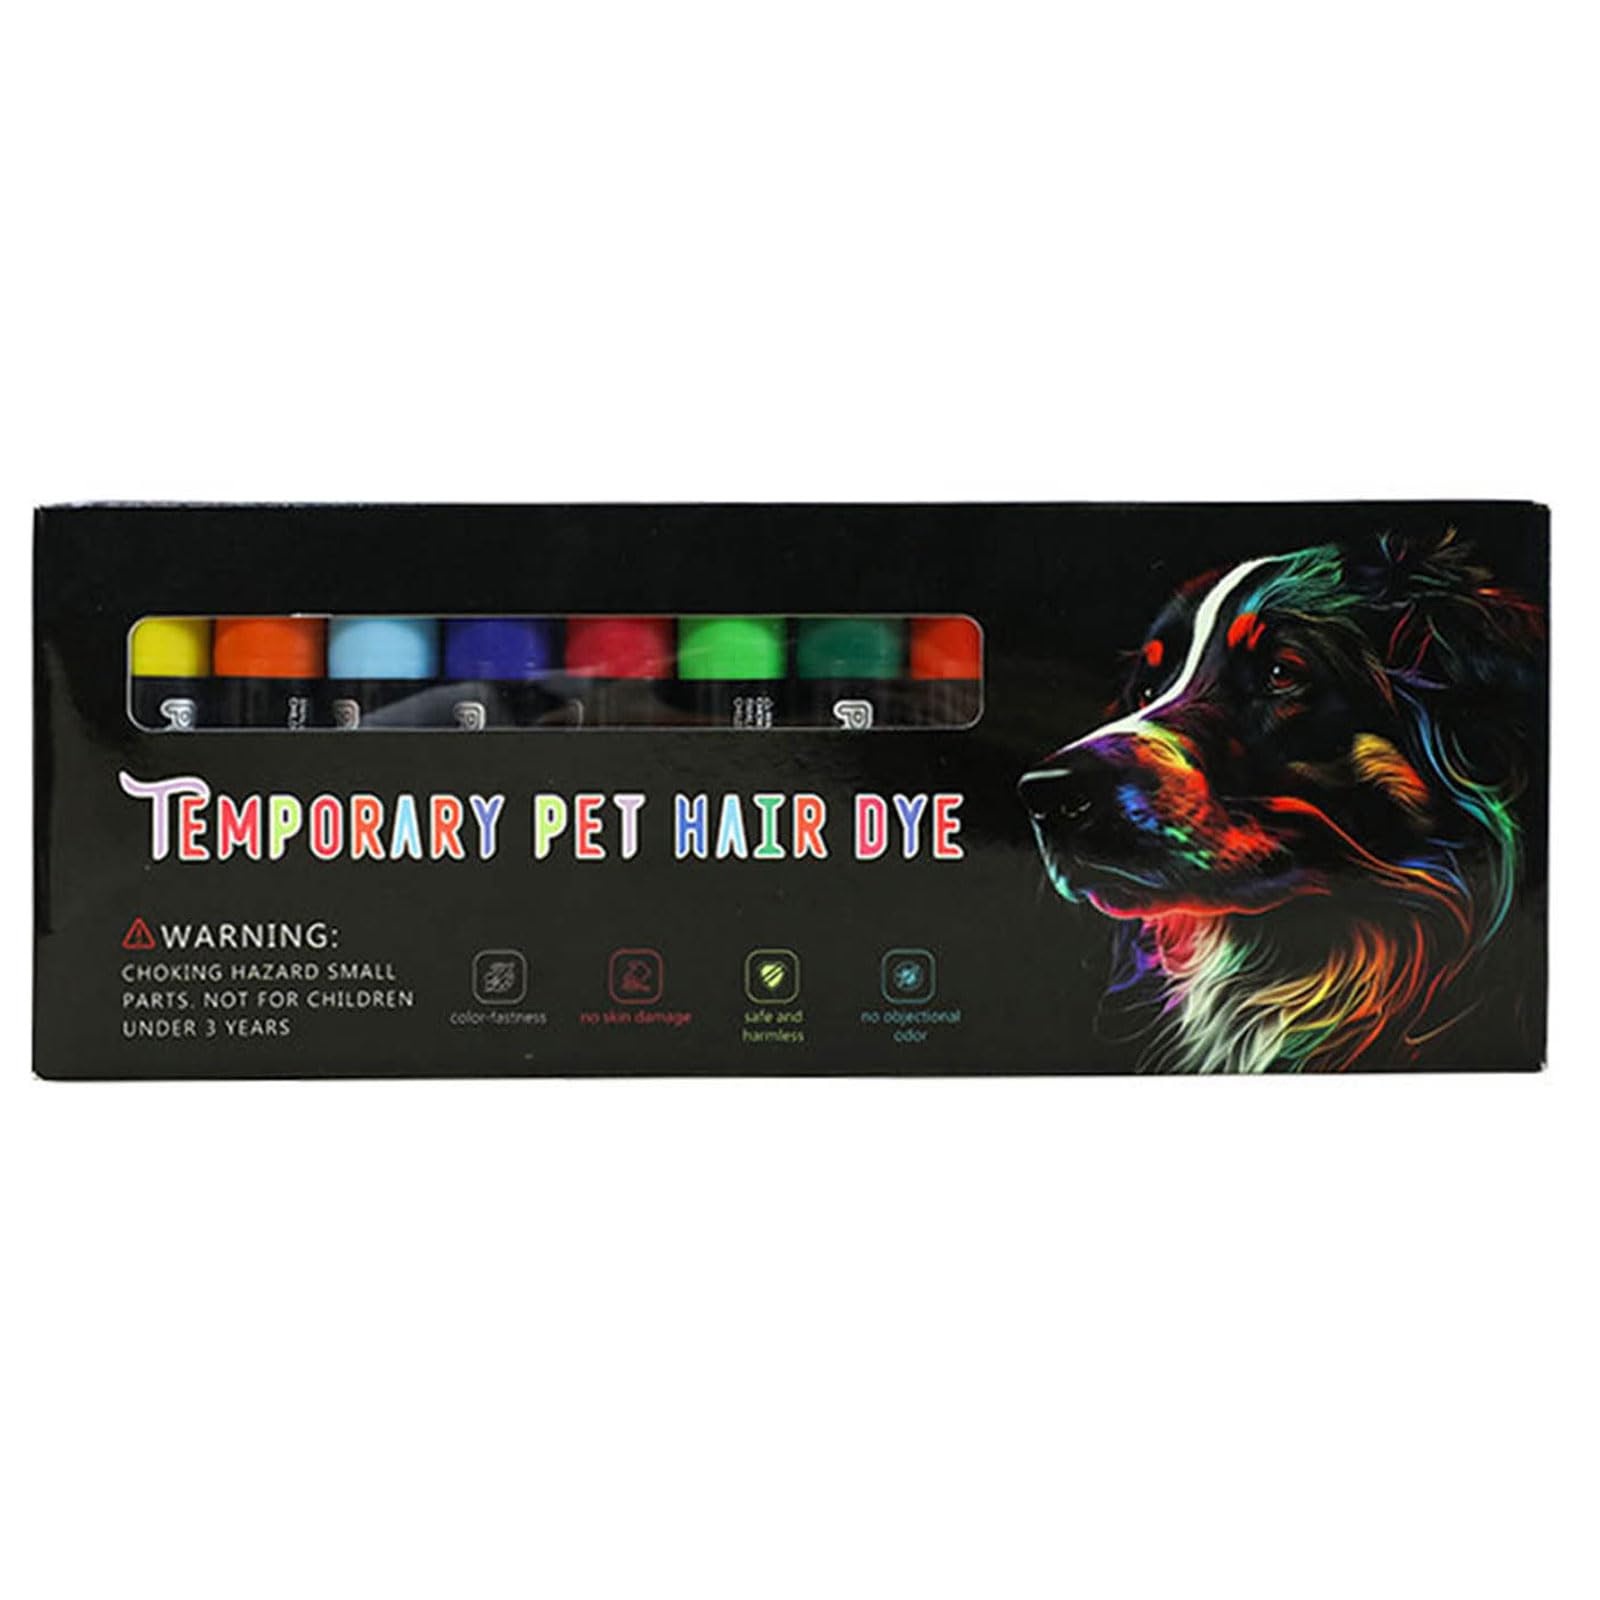 WuLi77 Hundepflegekreide 12-Farben Set Sichere Waschbare Haarkreide Für Halloween Karneval Party Tierhaarfärbestifte Set Leicht Zu Entfernen